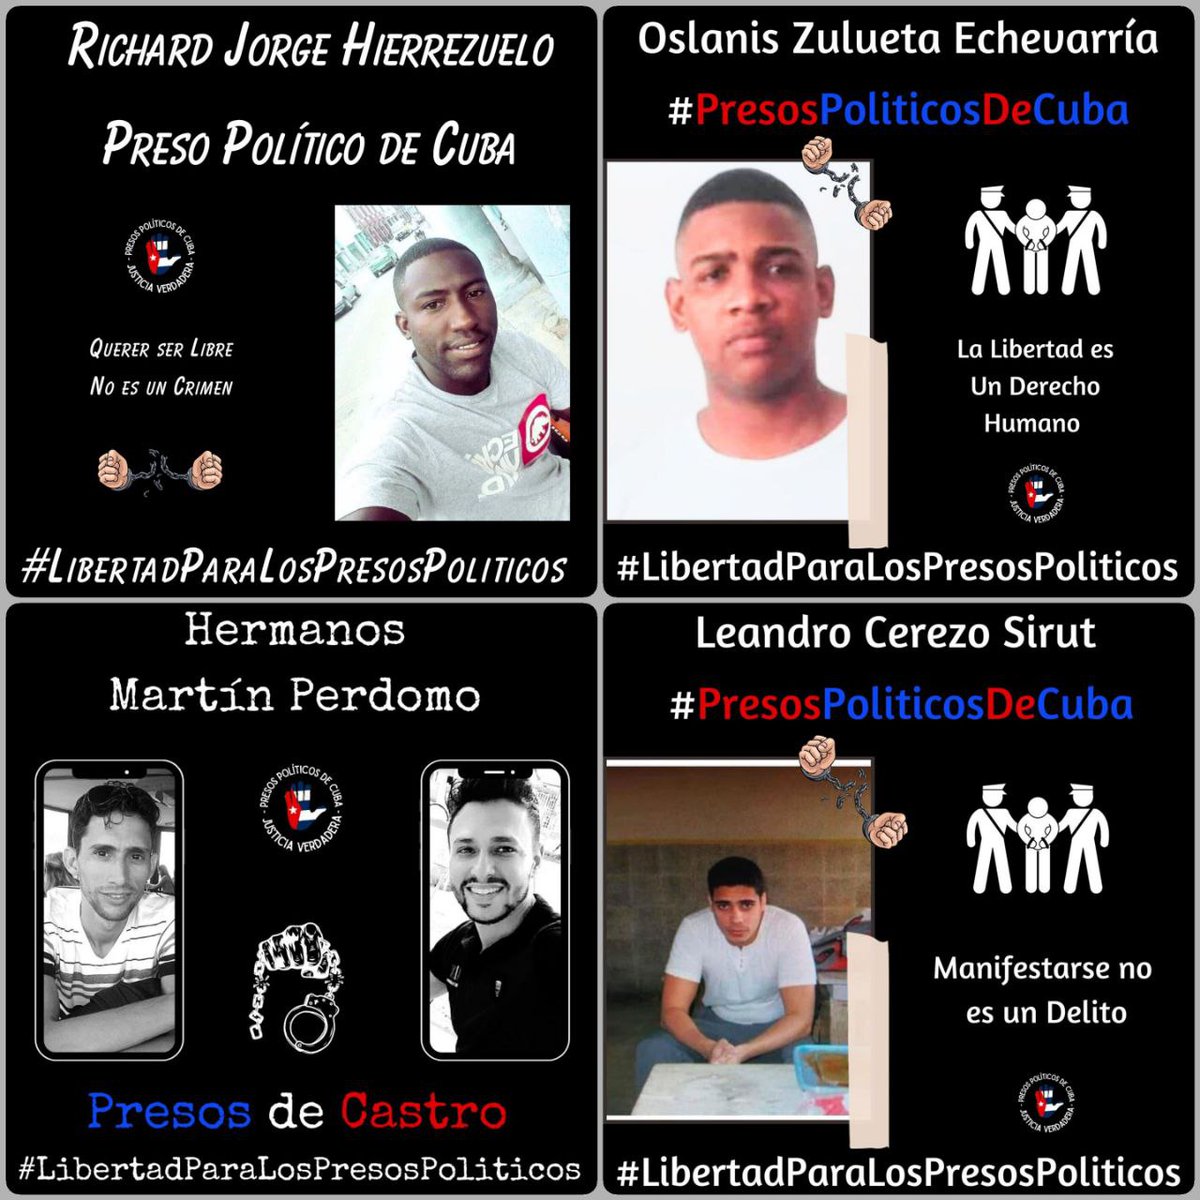 #Twittazo Libertad para los #PresosDeCastro. Son inocentes. No pararemos de denunciar y pedir su libertad. 🇨🇺💪🏻
.
.
.
#HastaQueSeanLibres 
#PresosPoliticosDeCuba
#LibertadParaLosPresosPoliticos